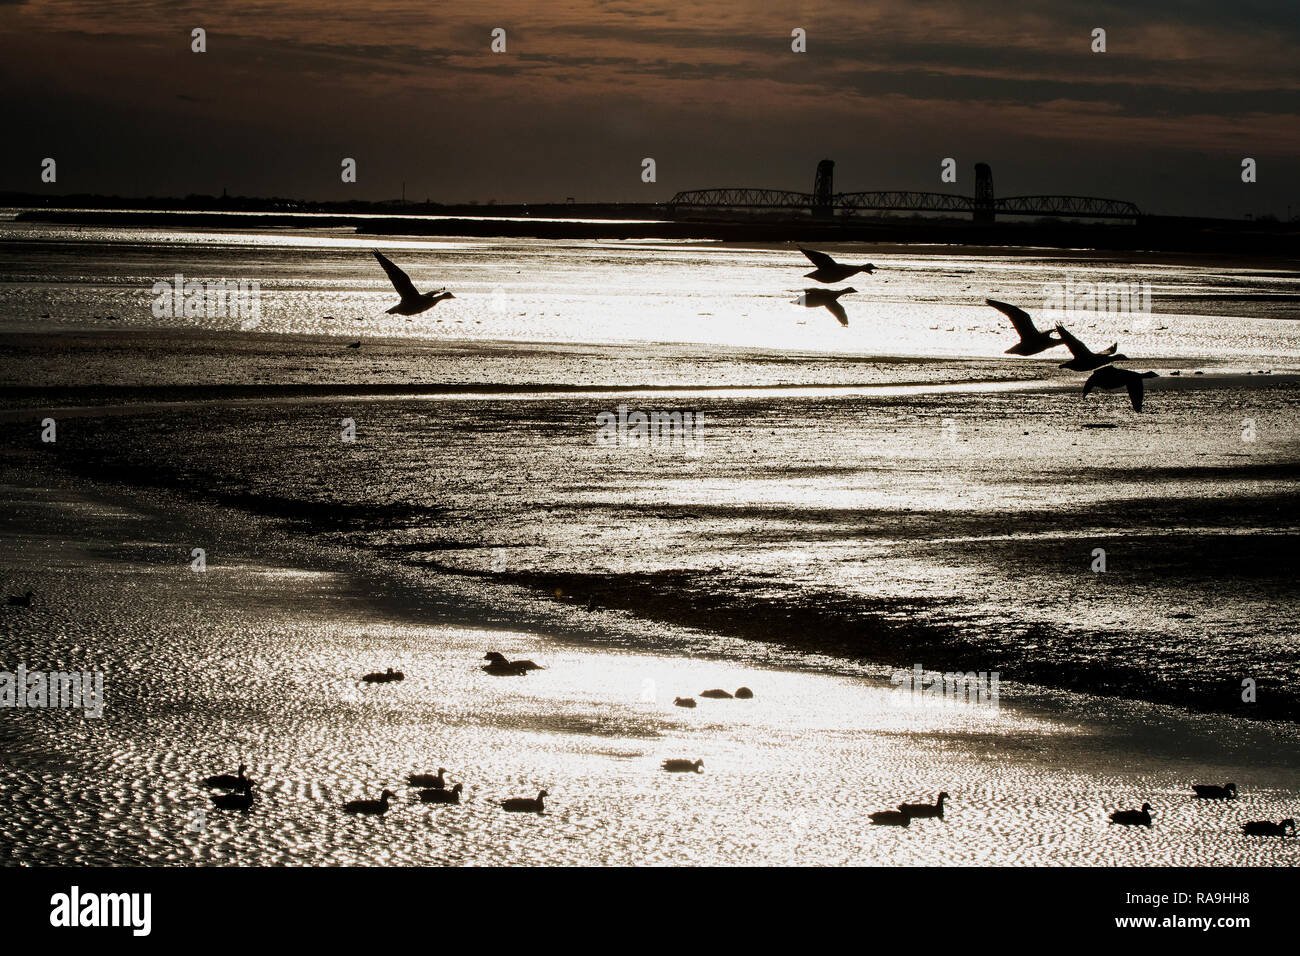 Moody SCENIC con uccelli acquatici della Jamaica Bay Wildlife Refuge a bassa marea Foto Stock